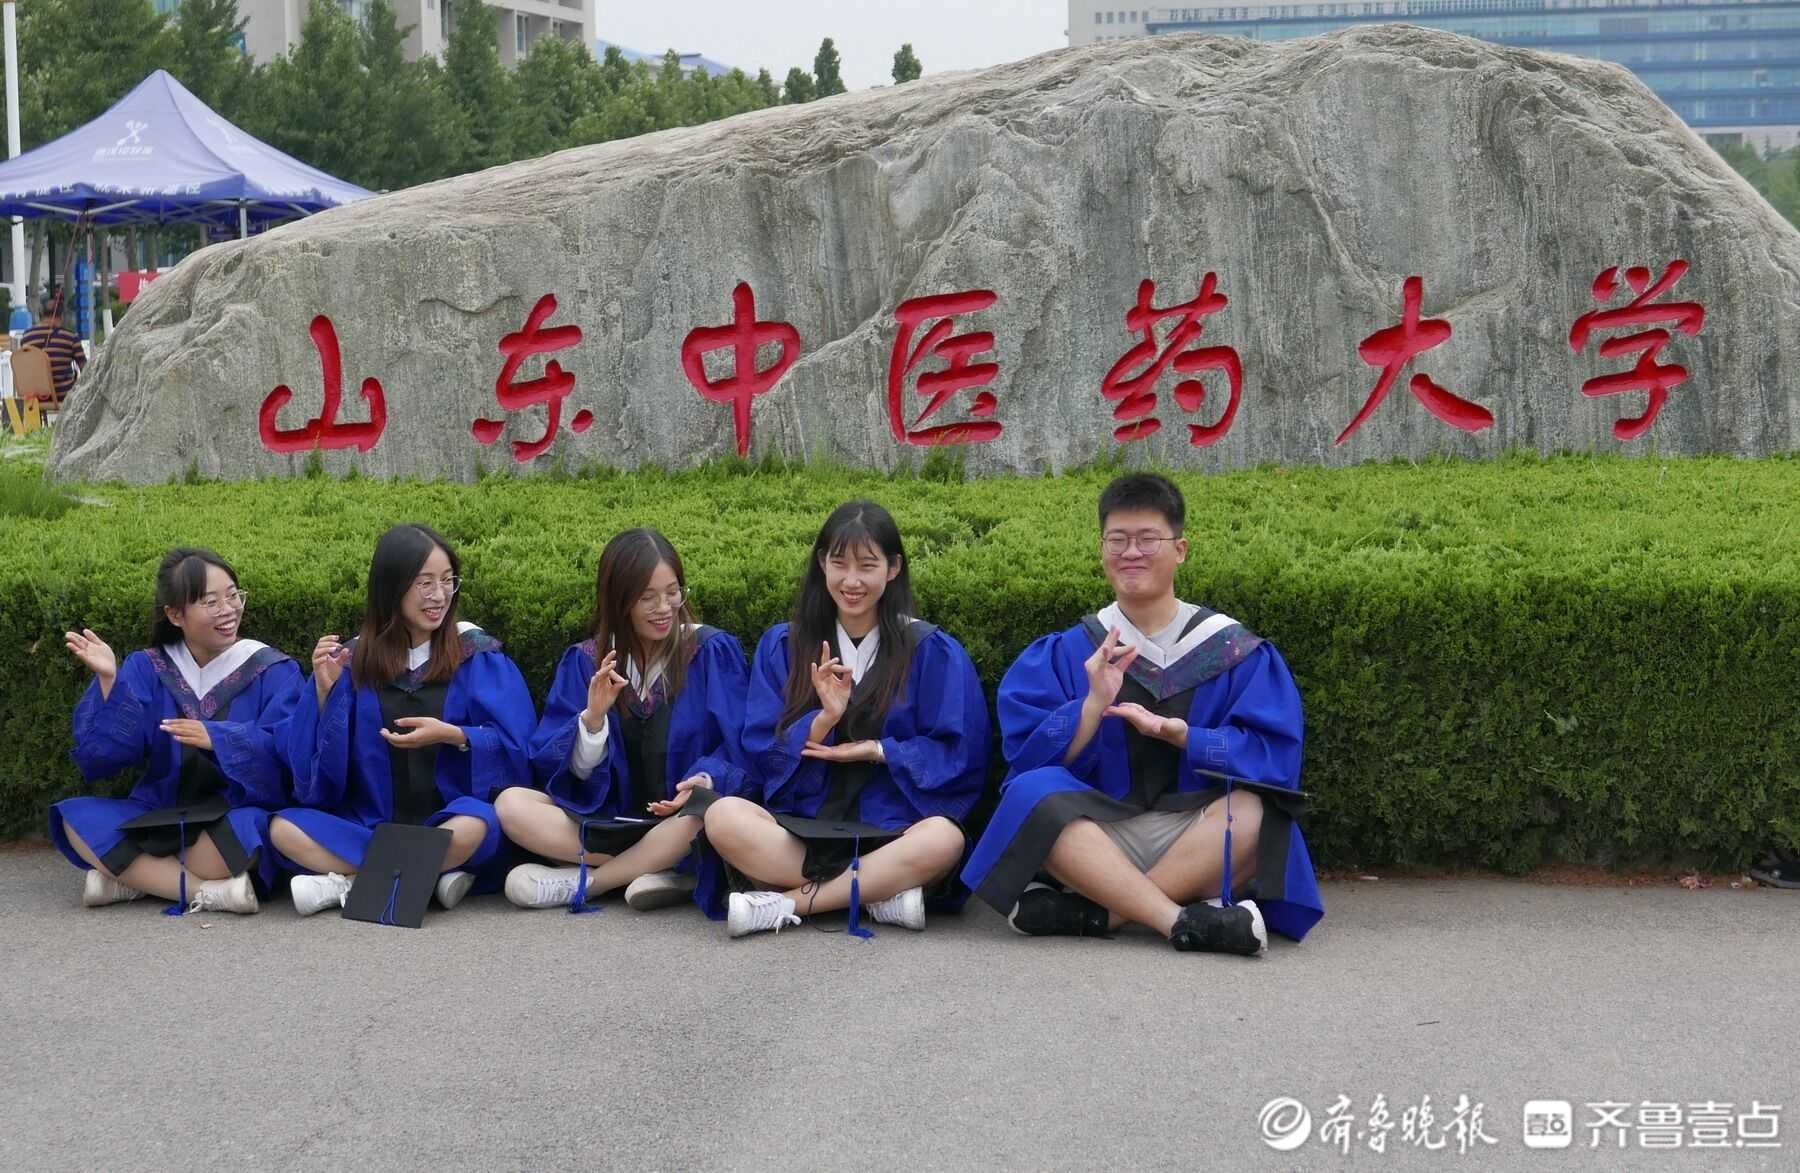 6月24日,山东中医药大学大门口,该校生化专业周教授的毕业生们穿起